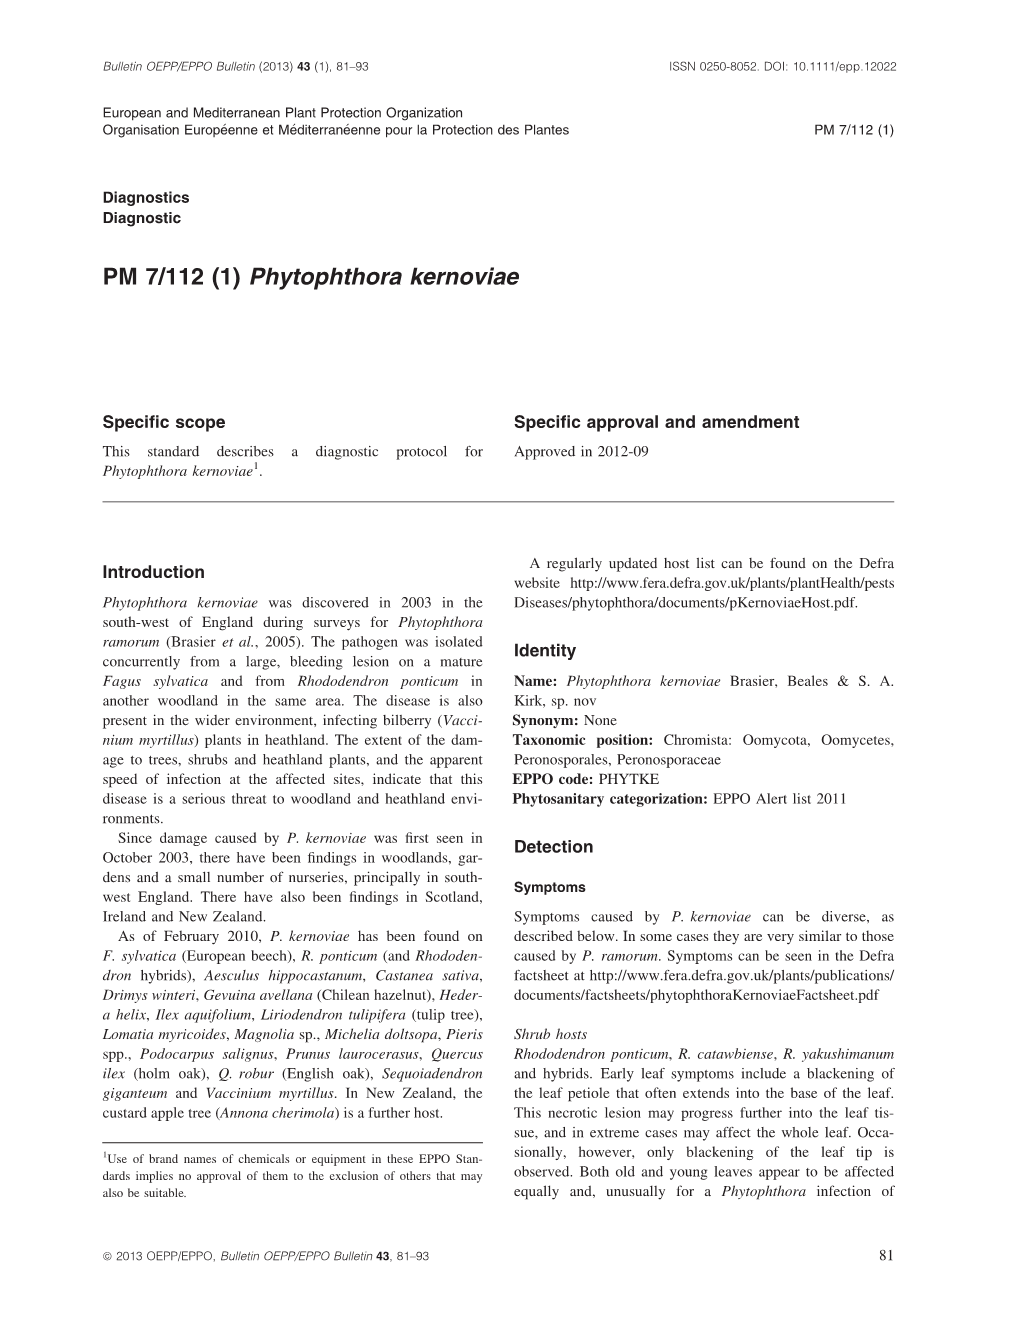 PM 7112 (1) Phytophthora Kernoviae